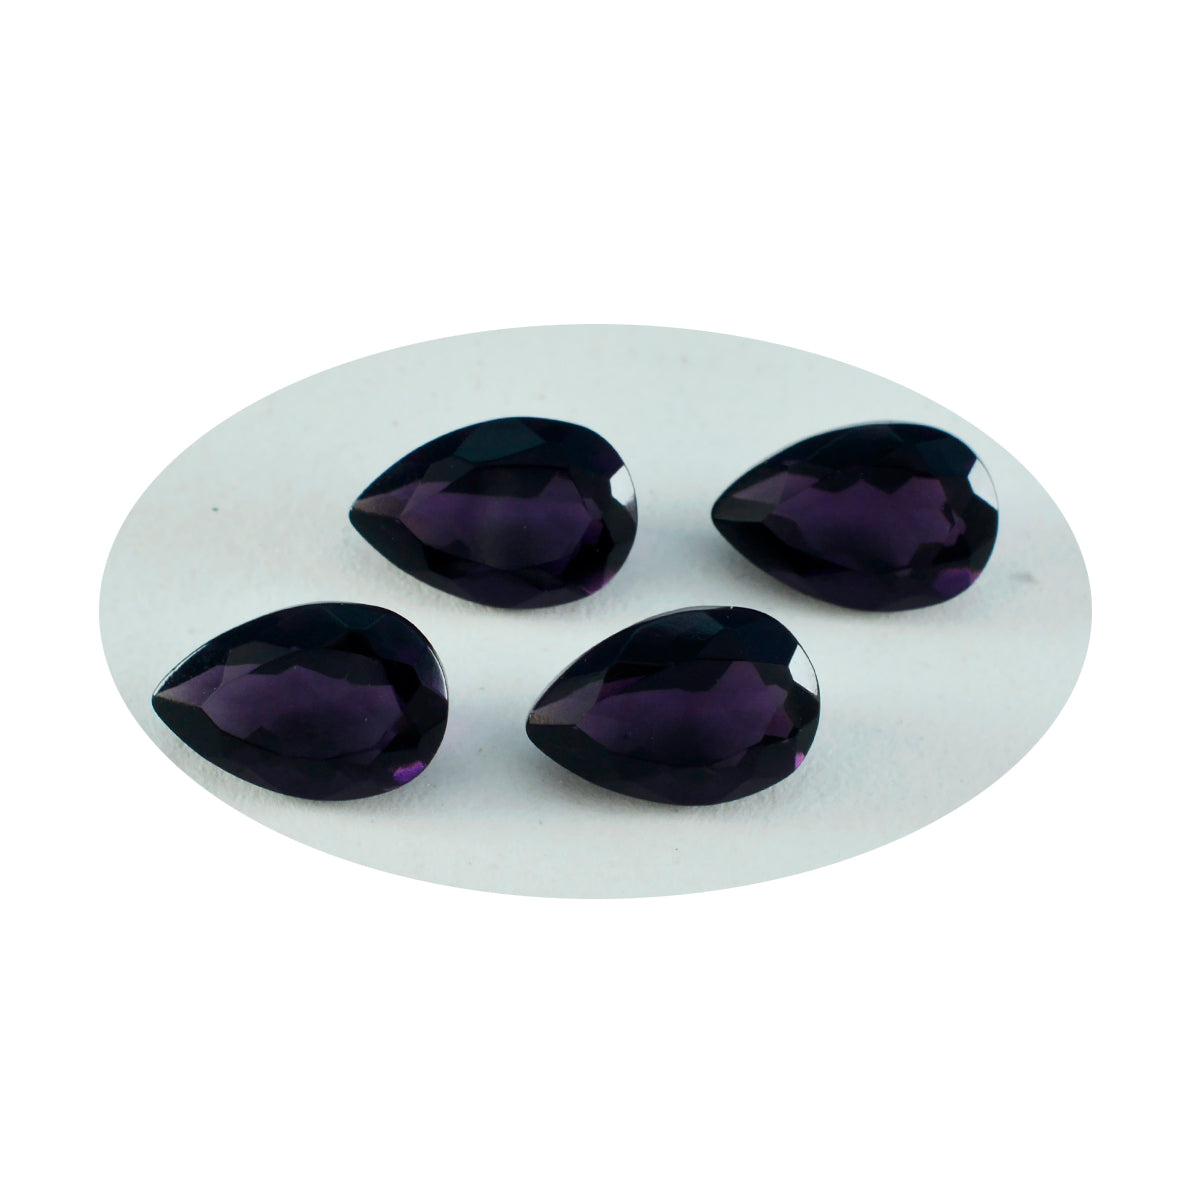 riyogems 1шт фиолетовый аметист cz ограненный 8x12 мм грушевидная форма A+ качество отдельные камни